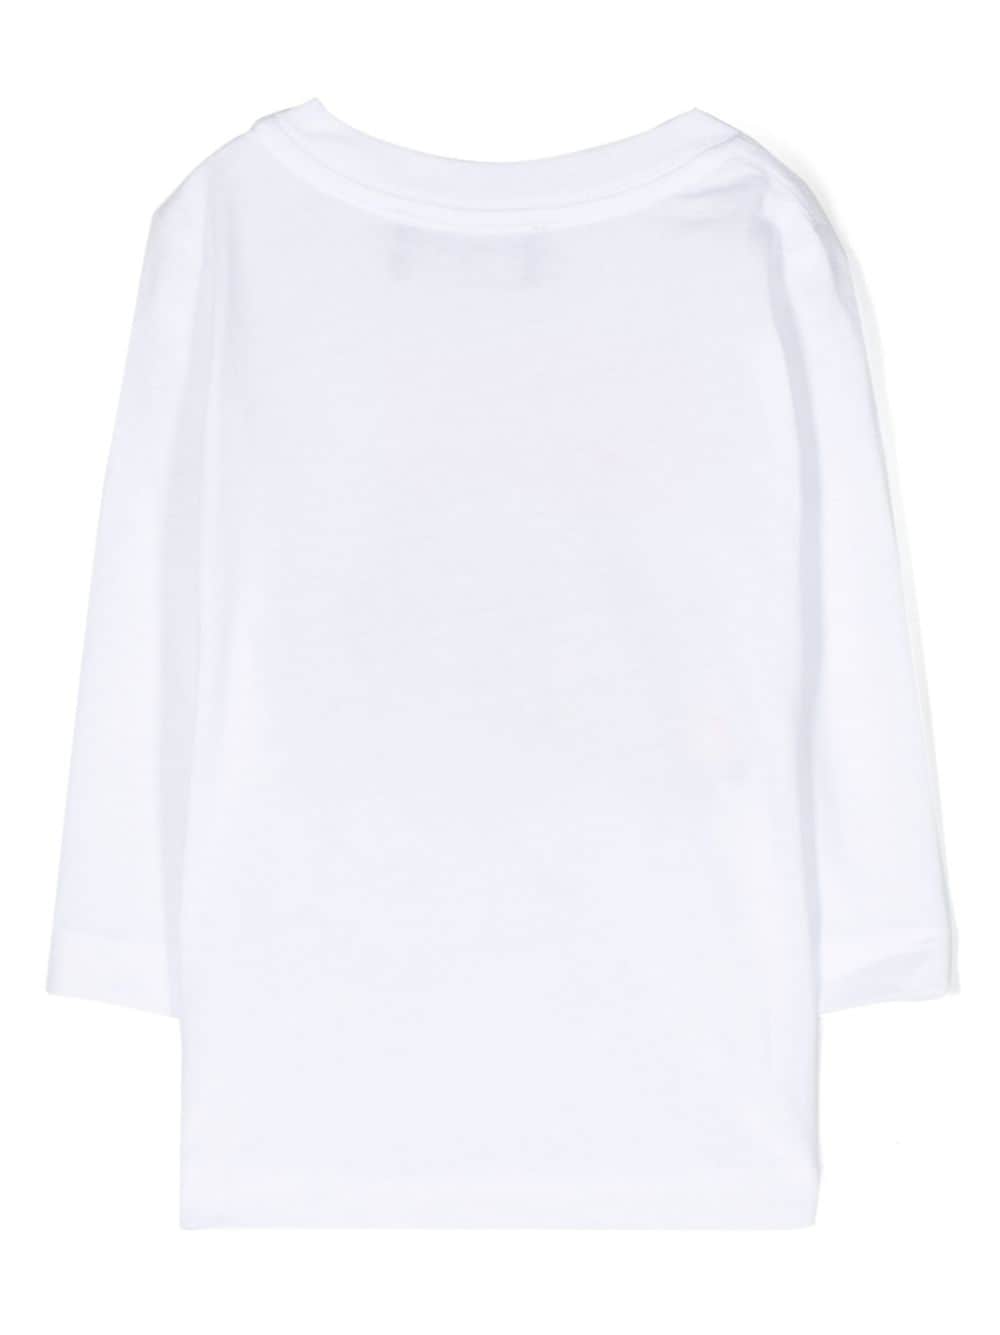 Chemise blanche, avec imprimé sur le devant